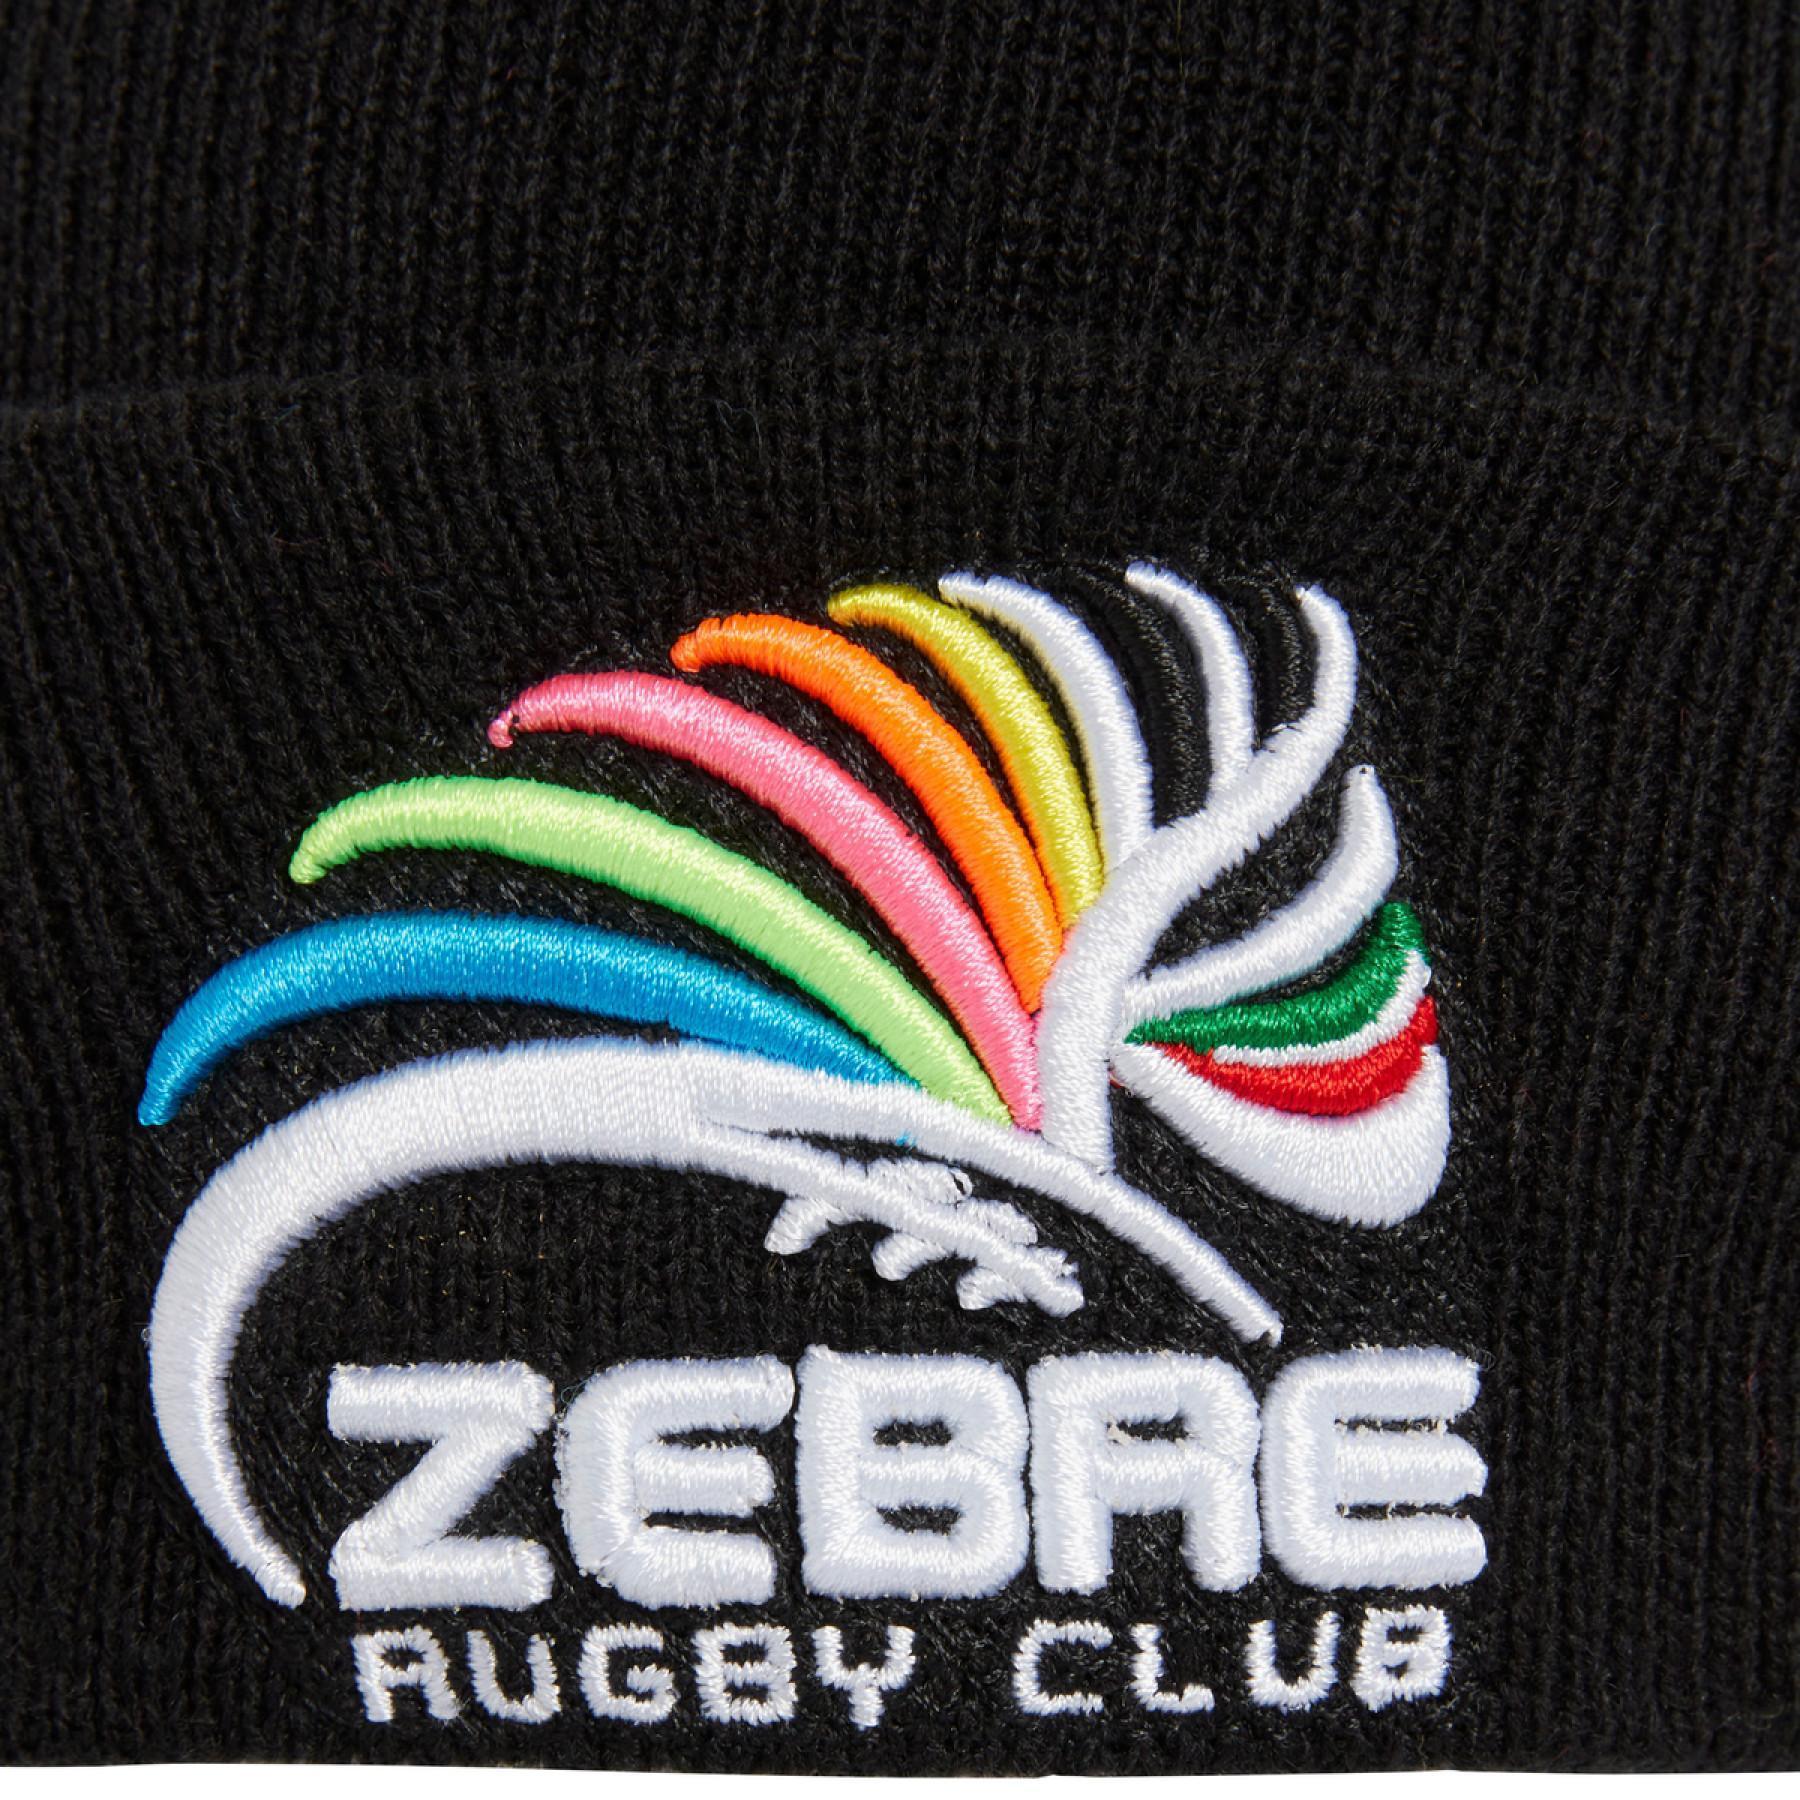 Cappello di lana per bambini Zebre rugby